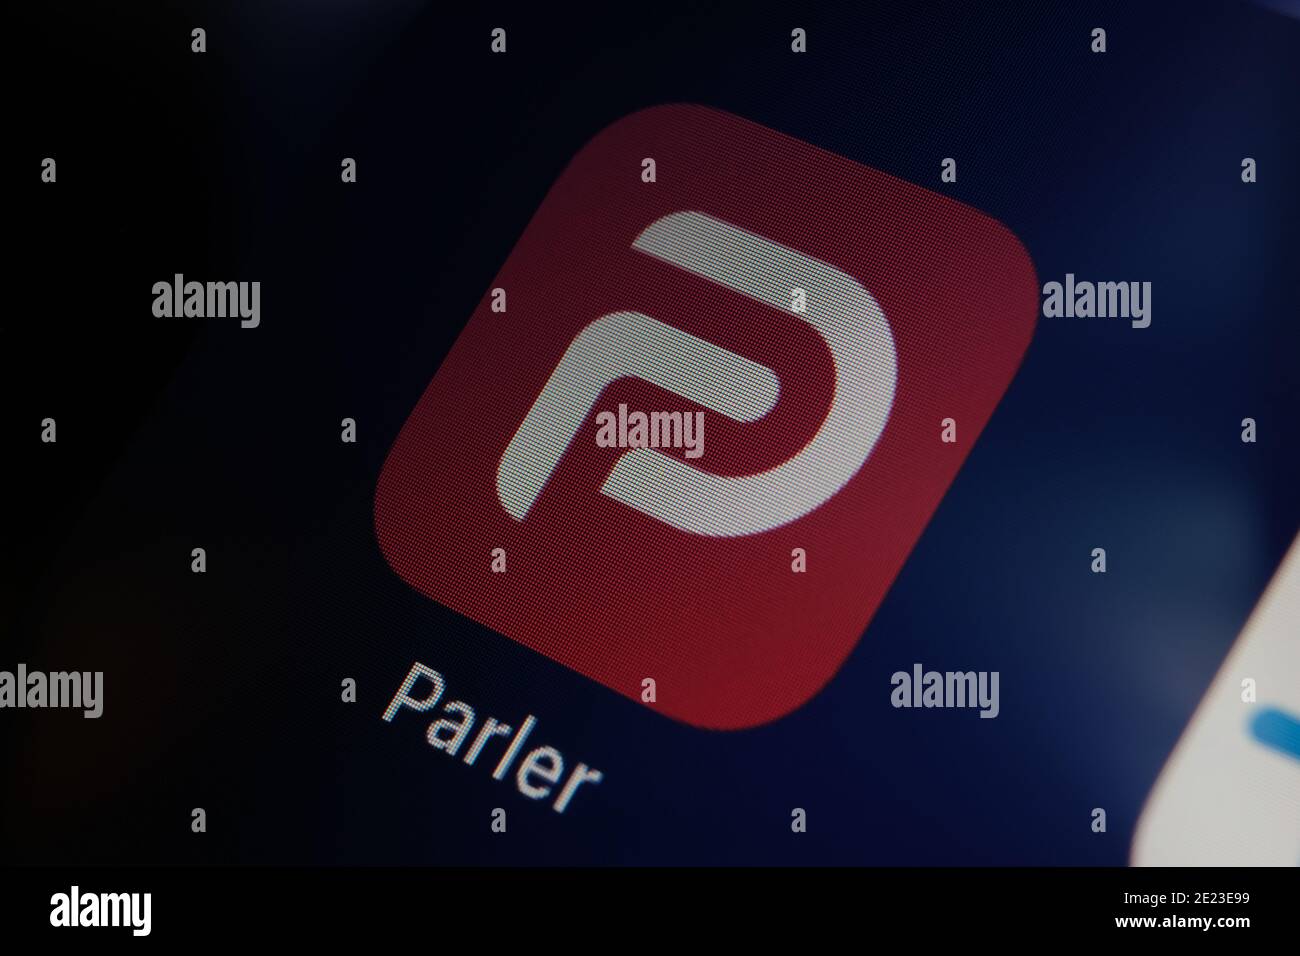 Logotipo de la aplicación Parler visto en la pantalla del iPad. Parler es una plataforma de medios sociales prohibida en los Estados Unidos. Foto de stock